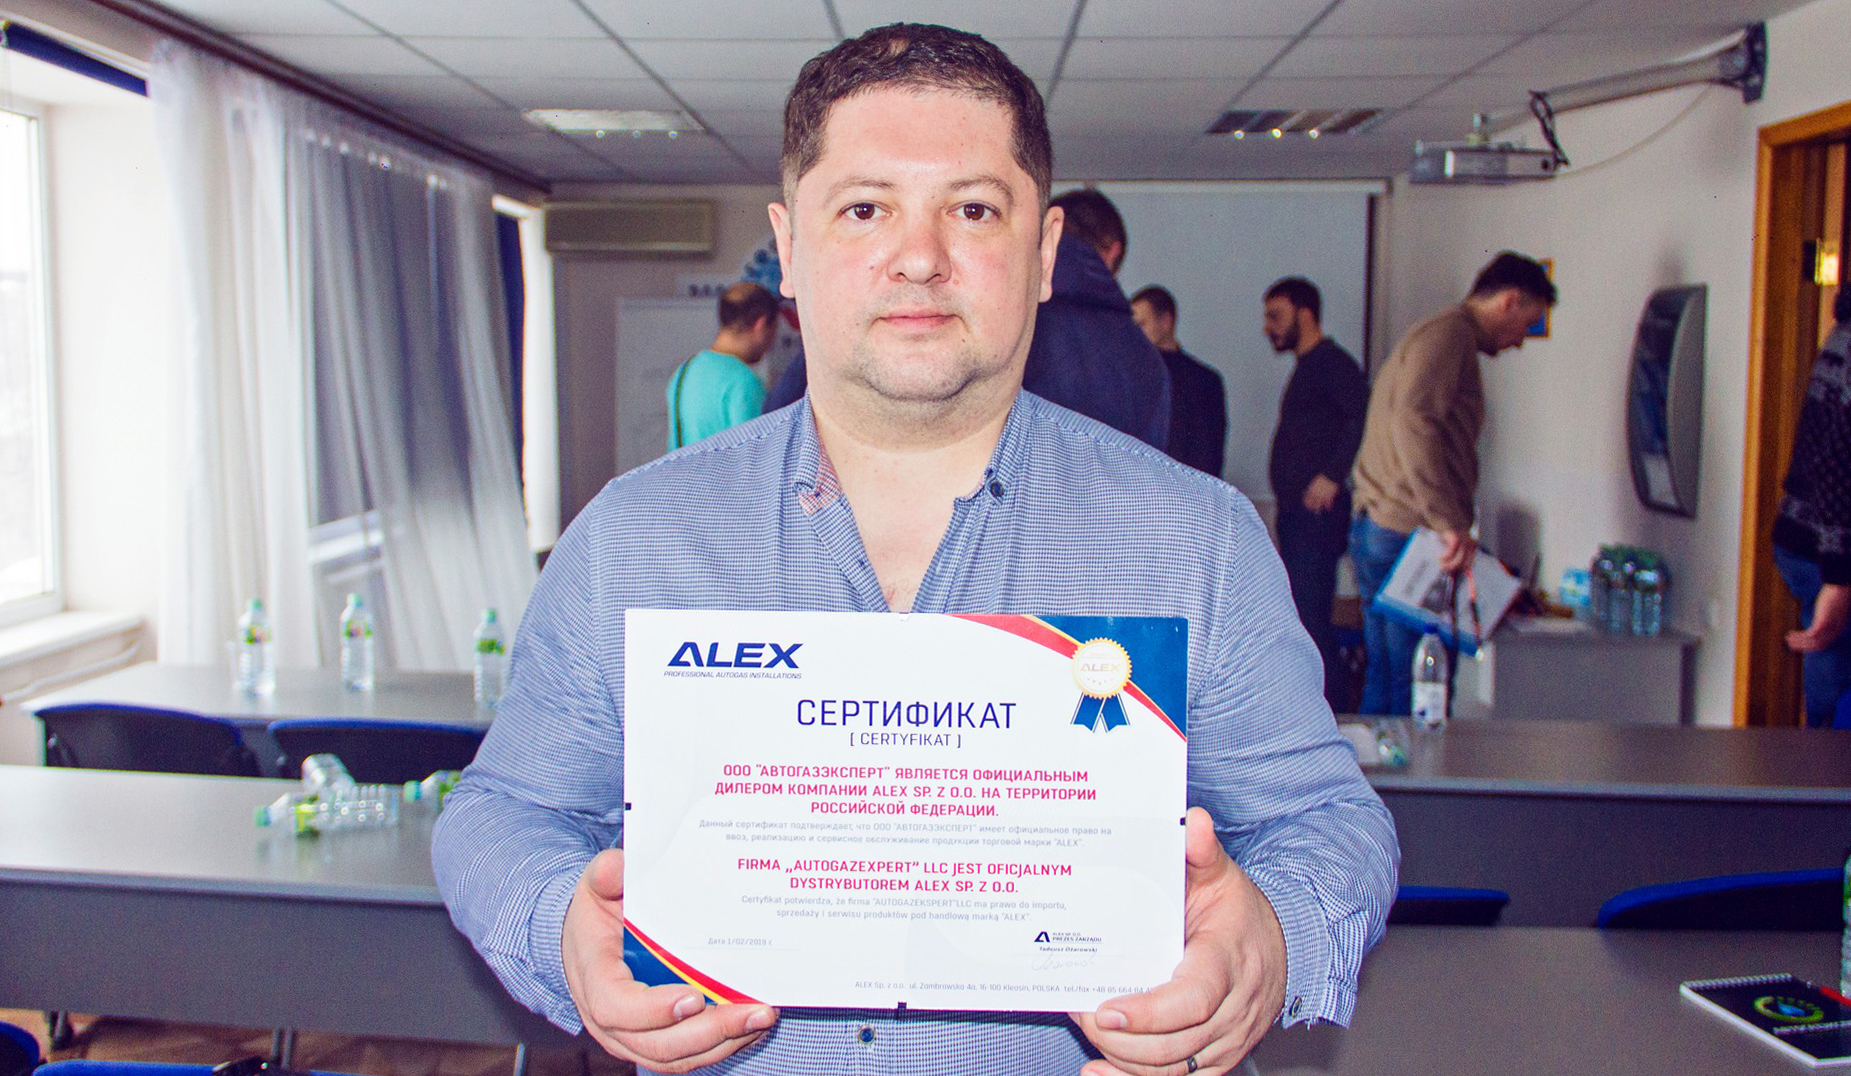 Иван Крот — руководитель АвтоГазЭксперт — получил сертификат официального дилера ГБО ALEX